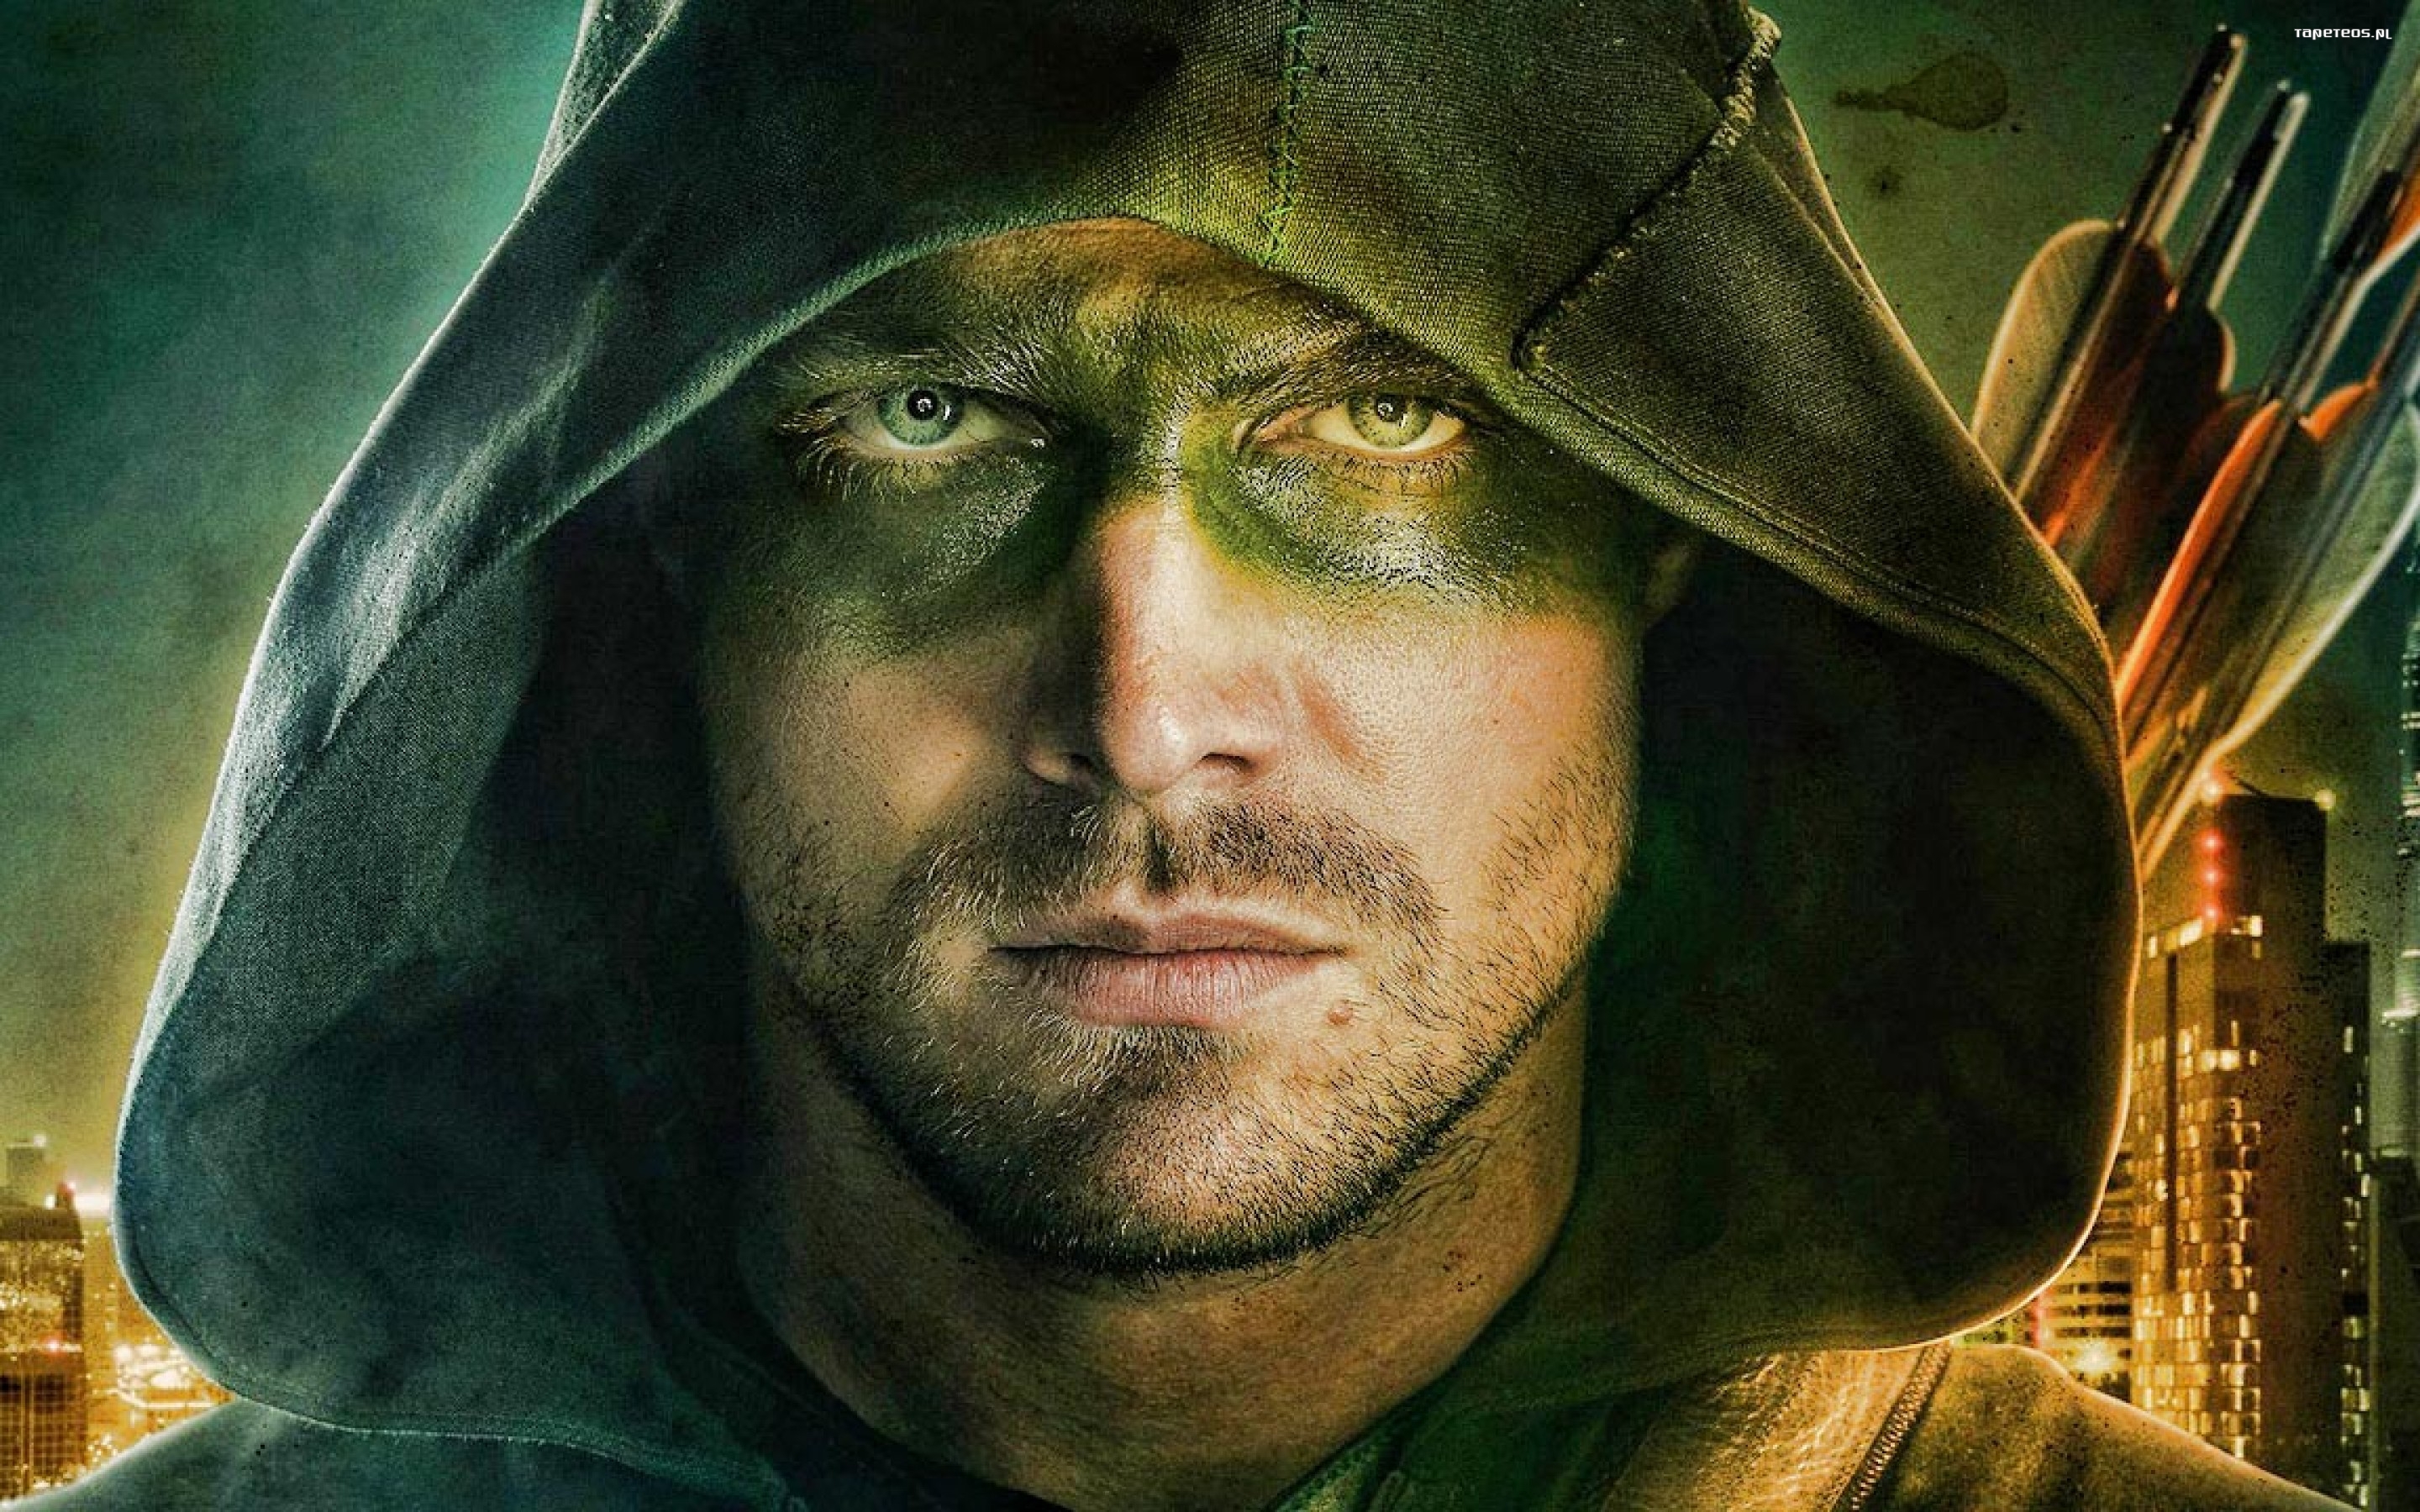 Arrow 046 Oliver Queen, Green Arrow